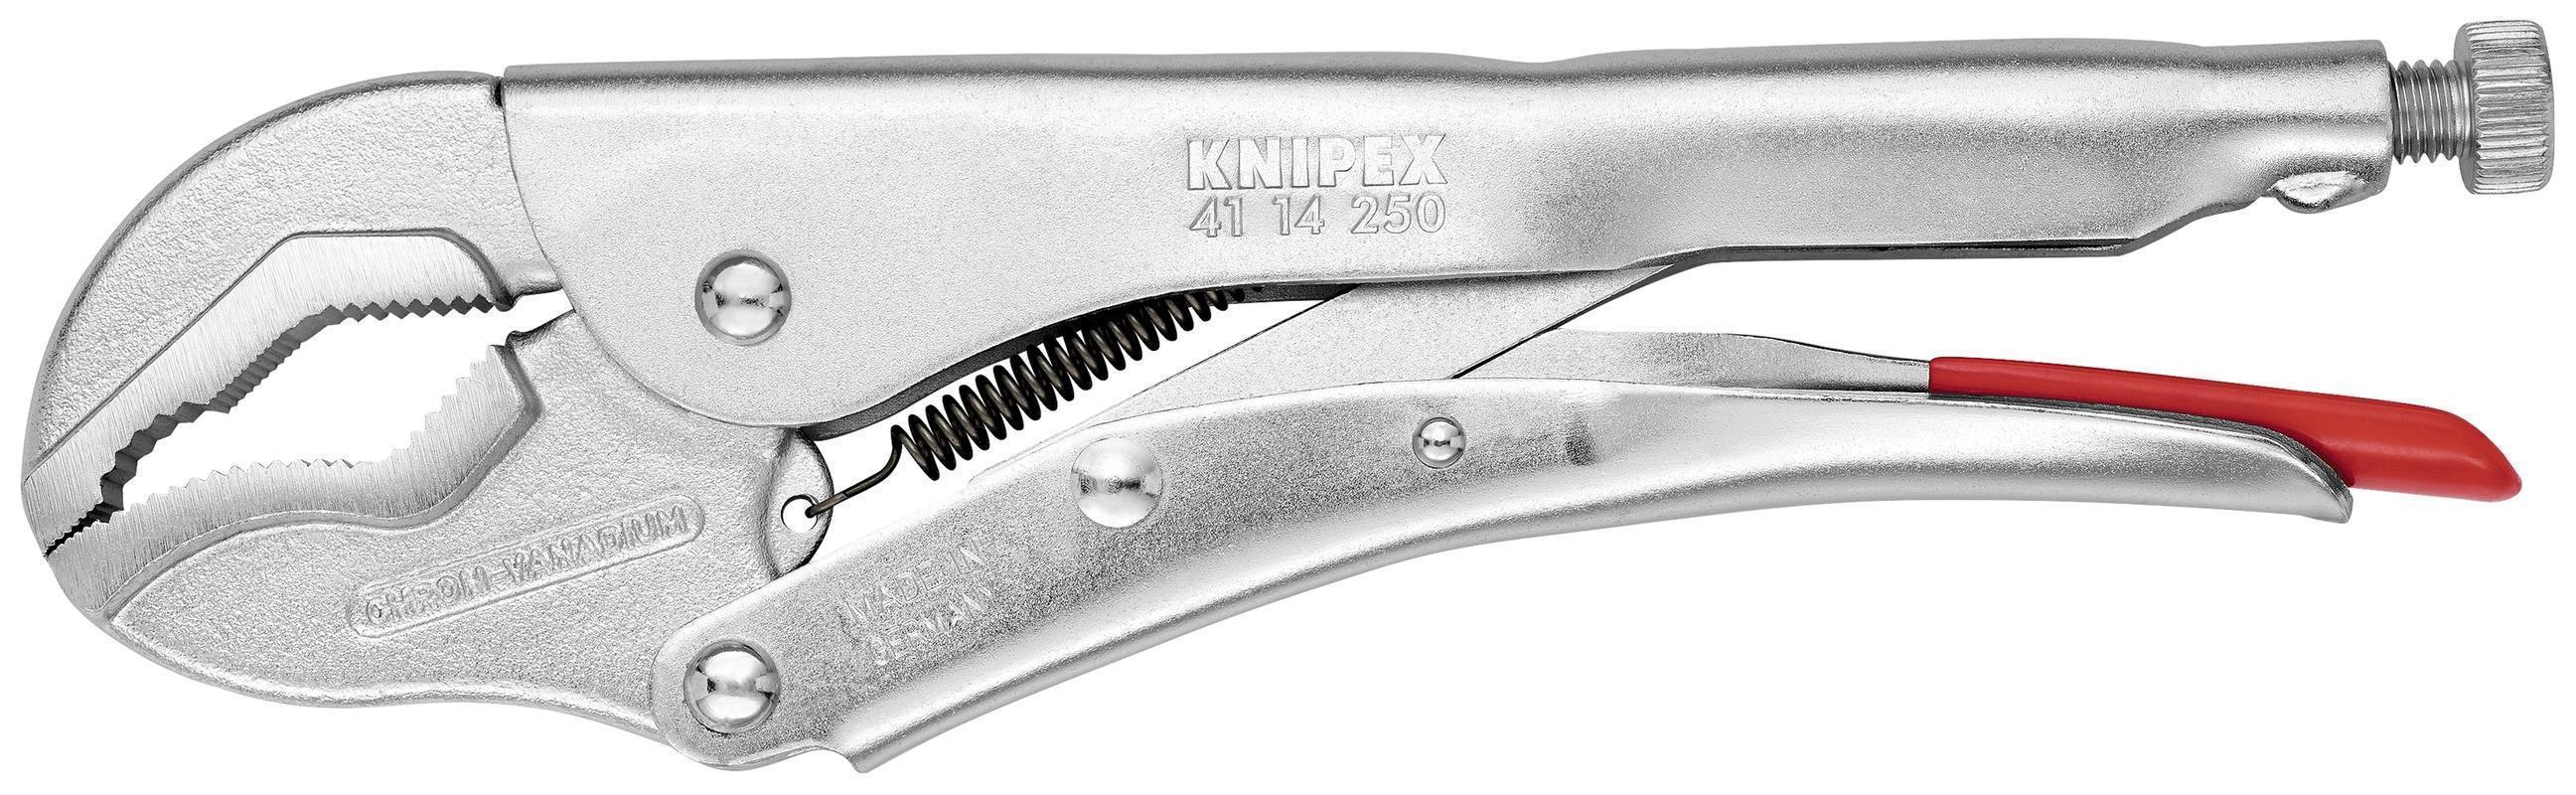 Knipex® 41 14 250